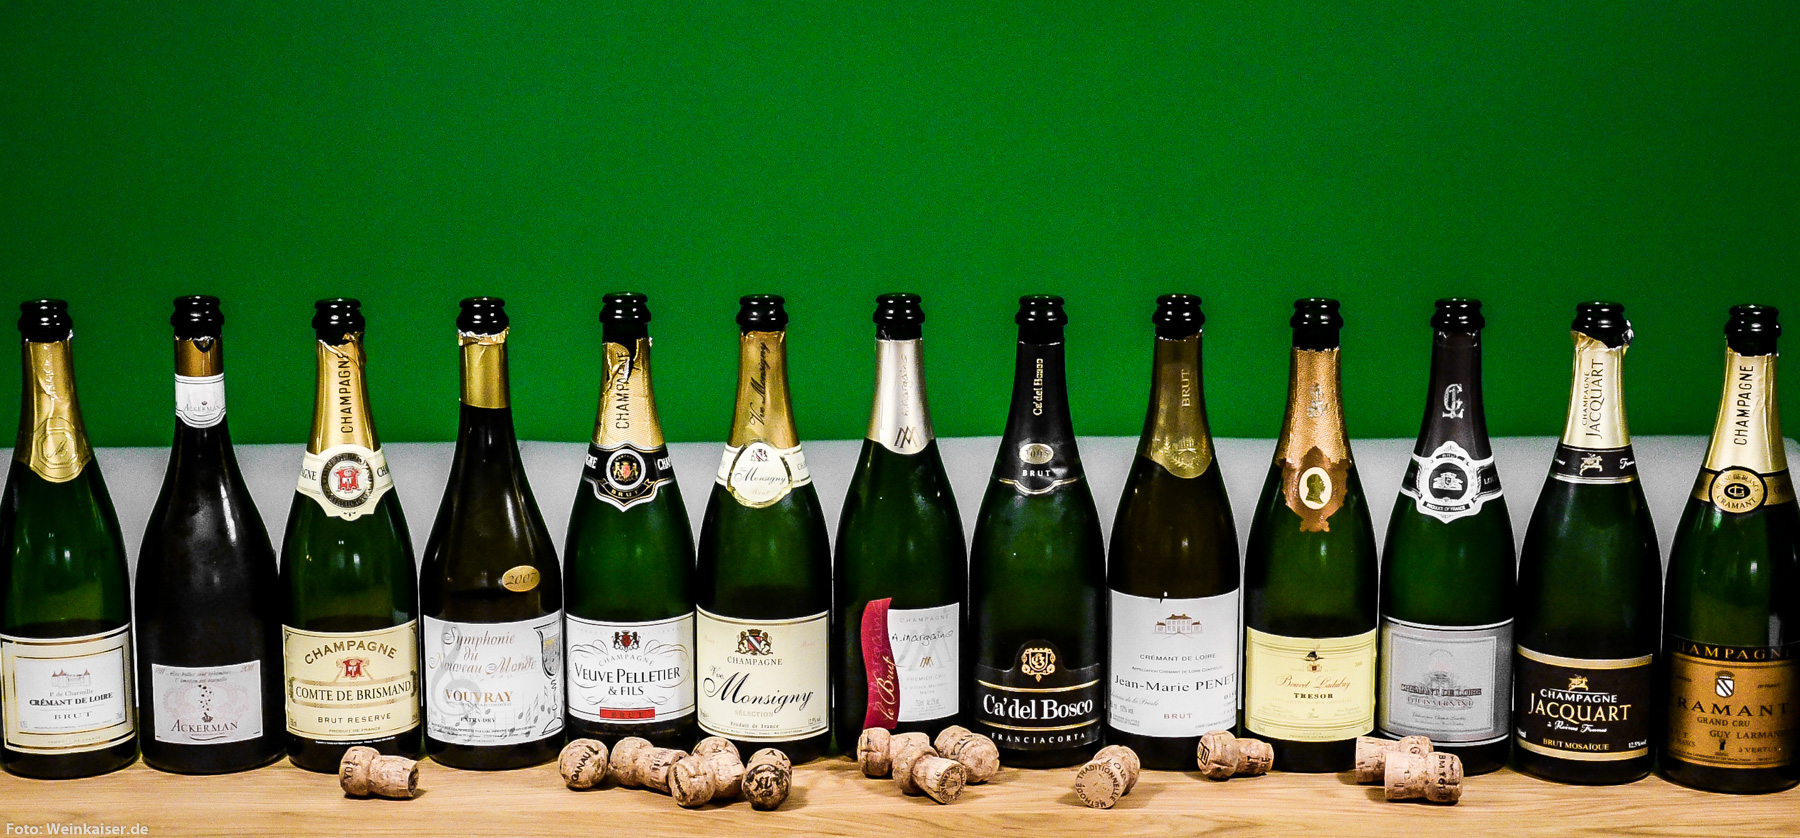 Stiftung Warentest macht PR für Billig-Champagner ALDI